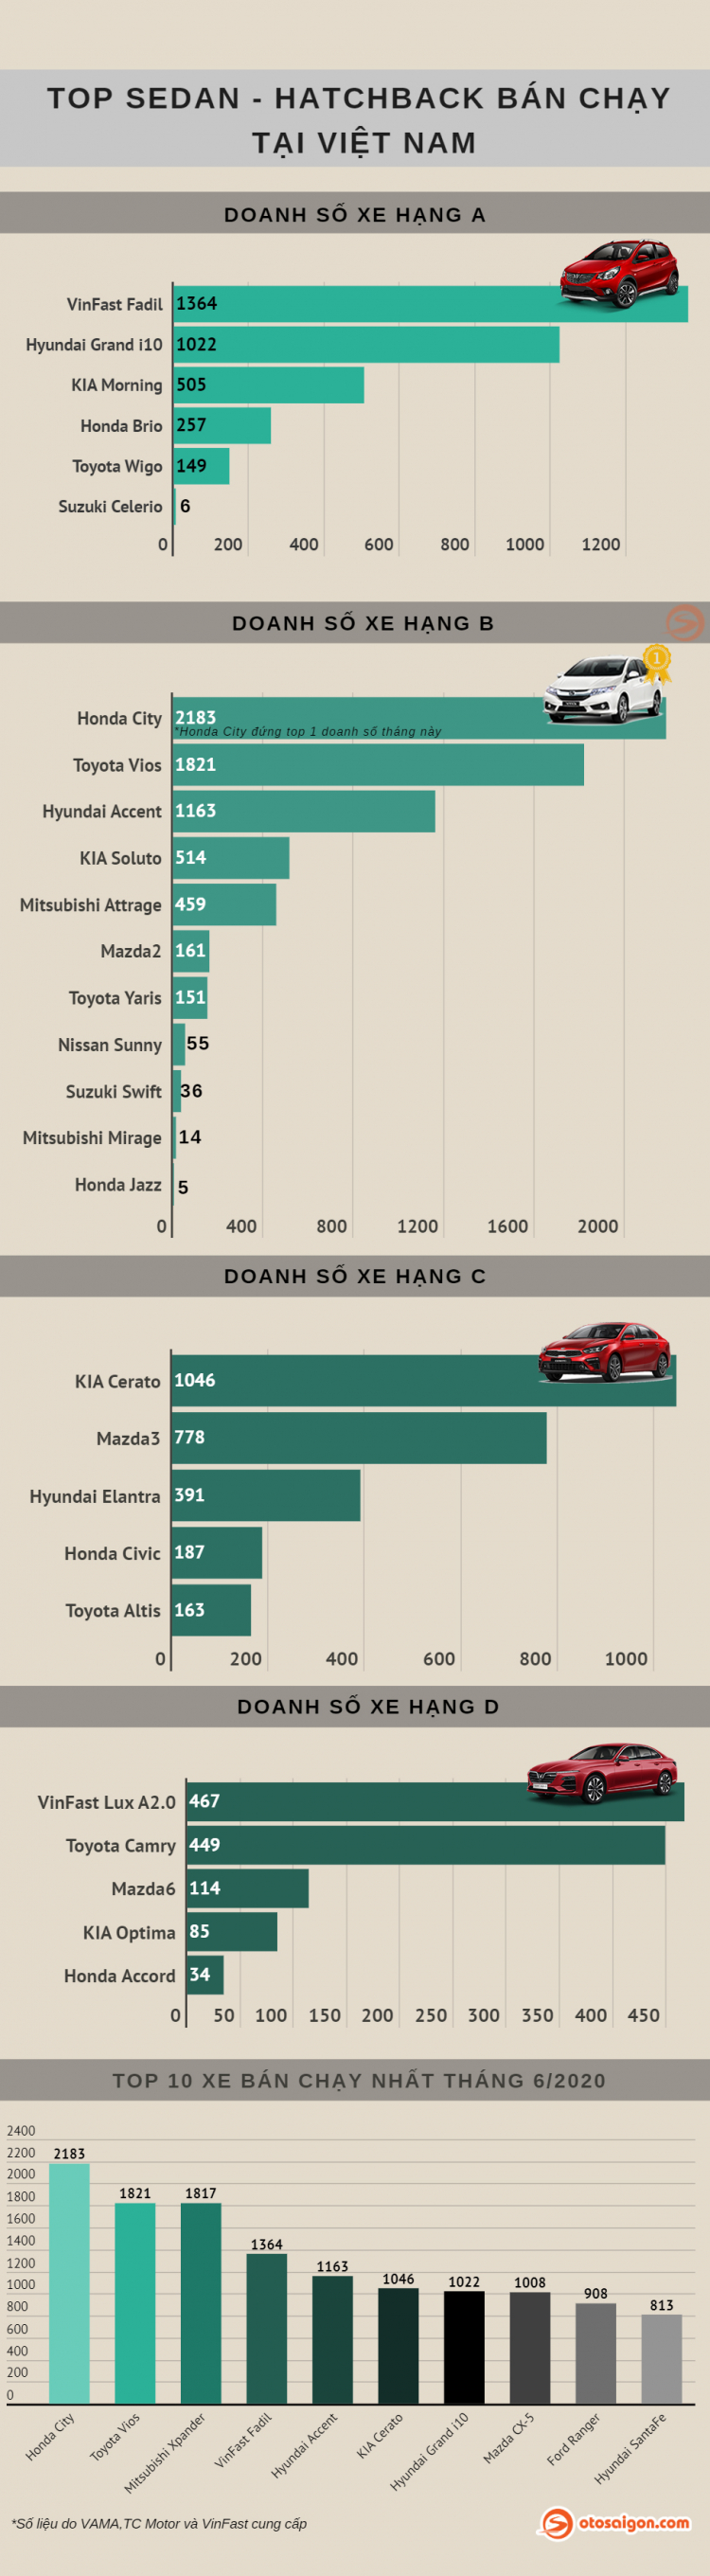 [Infographic] Top Sedan-Hatchback bán chạy tại Việt Nam tháng 6/2020: Honda City lập kỷ lục